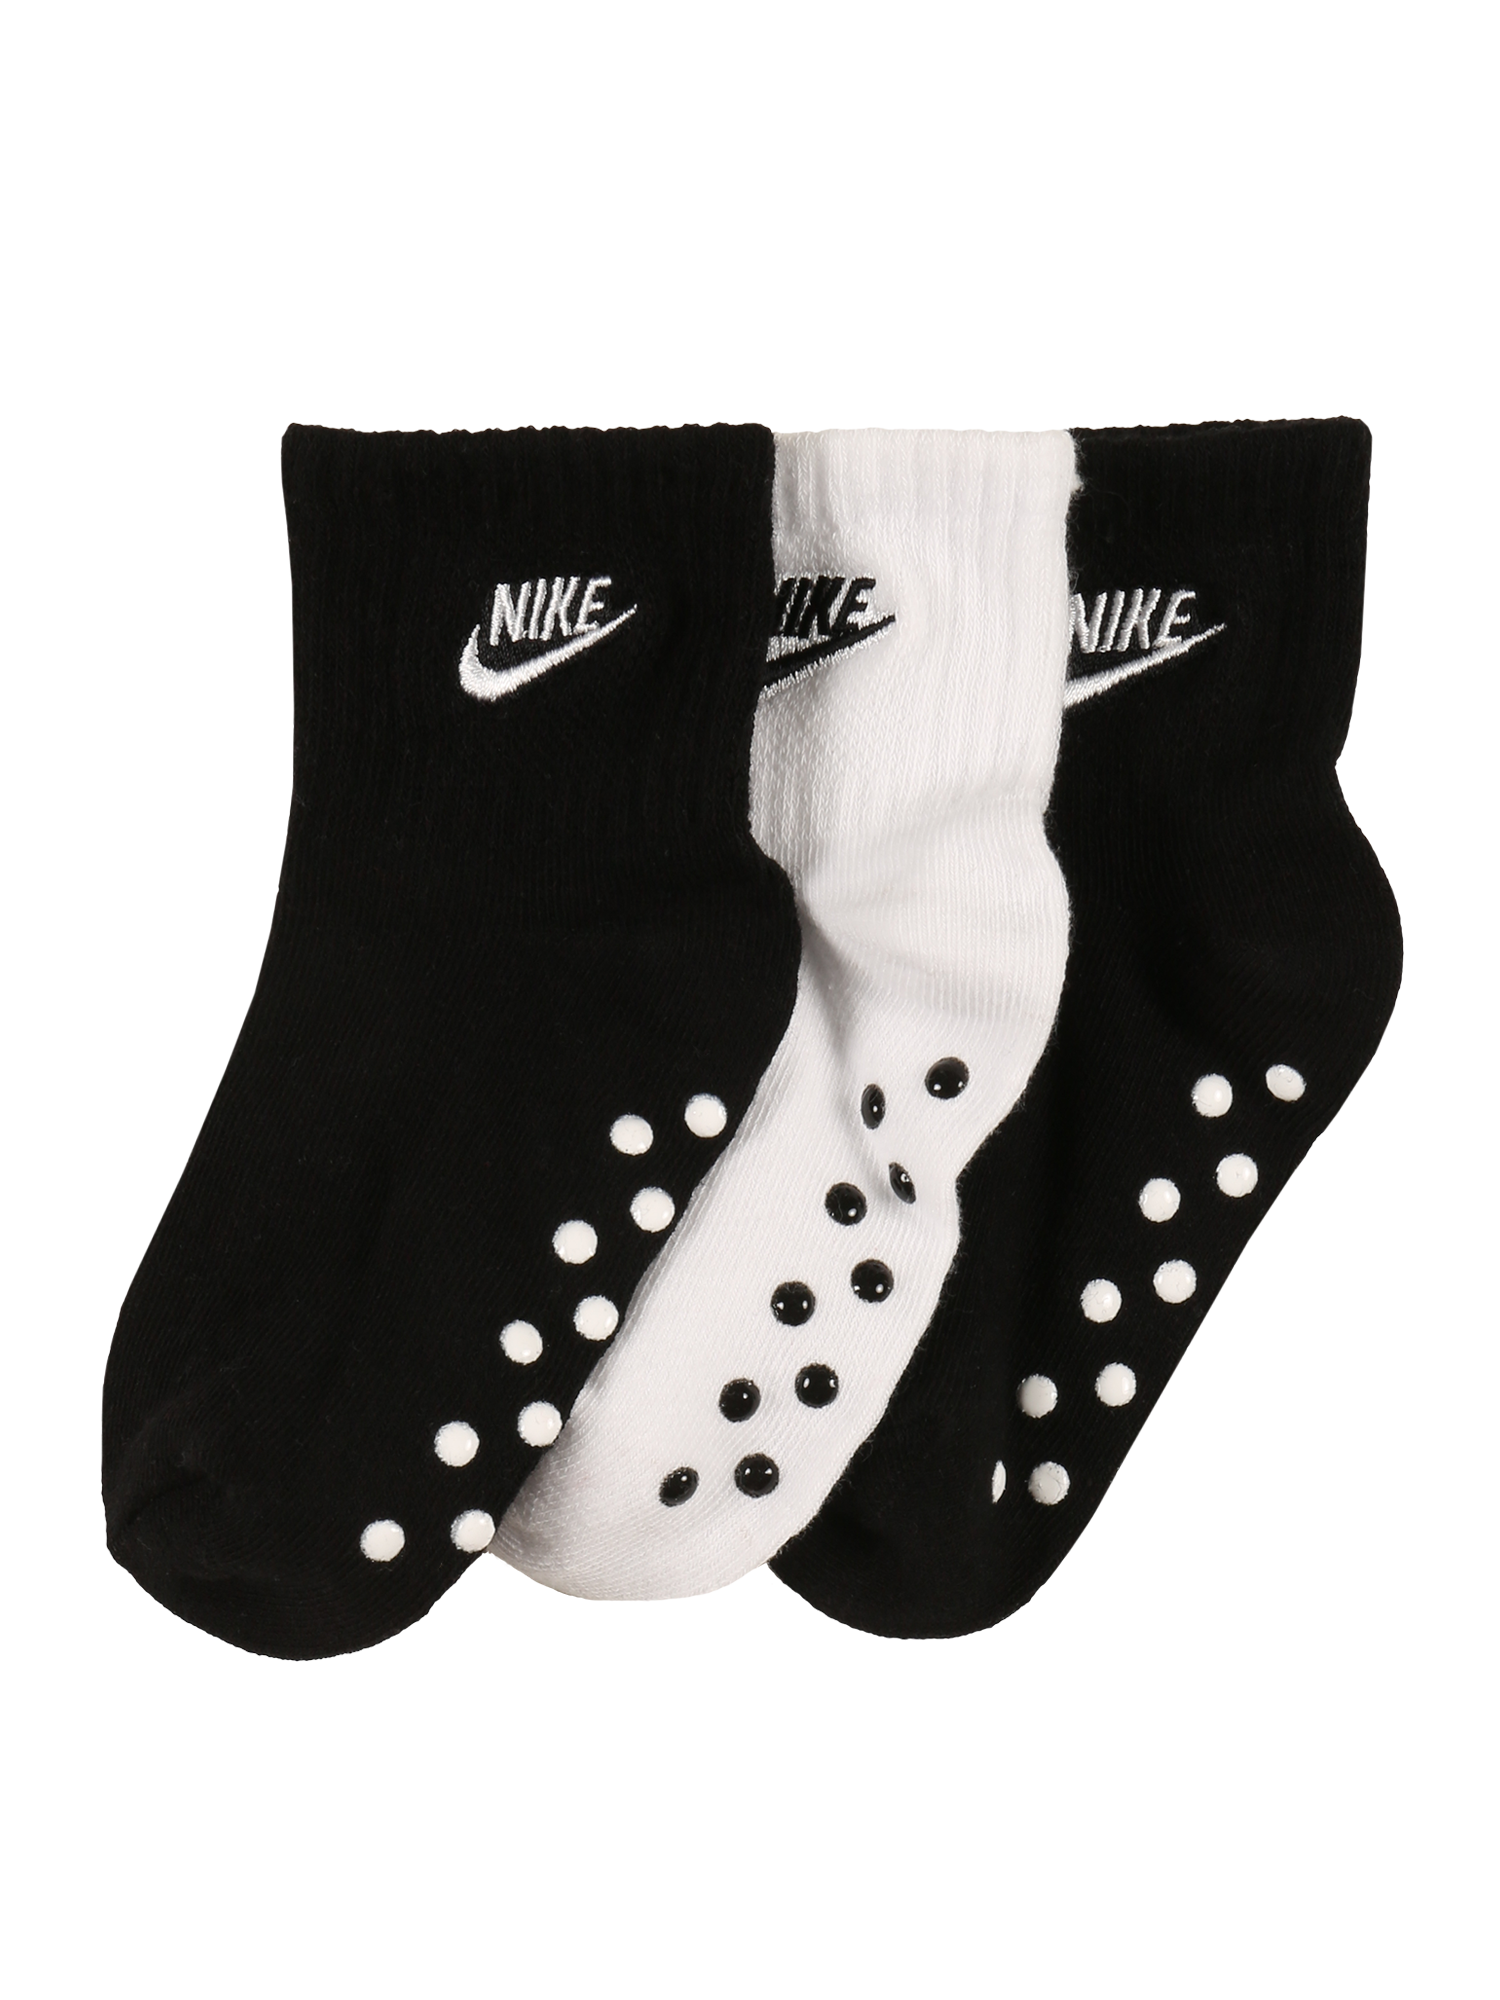 Dzieci twVkx Nike Sportswear Skarpety w kolorze Czarny, Białym 